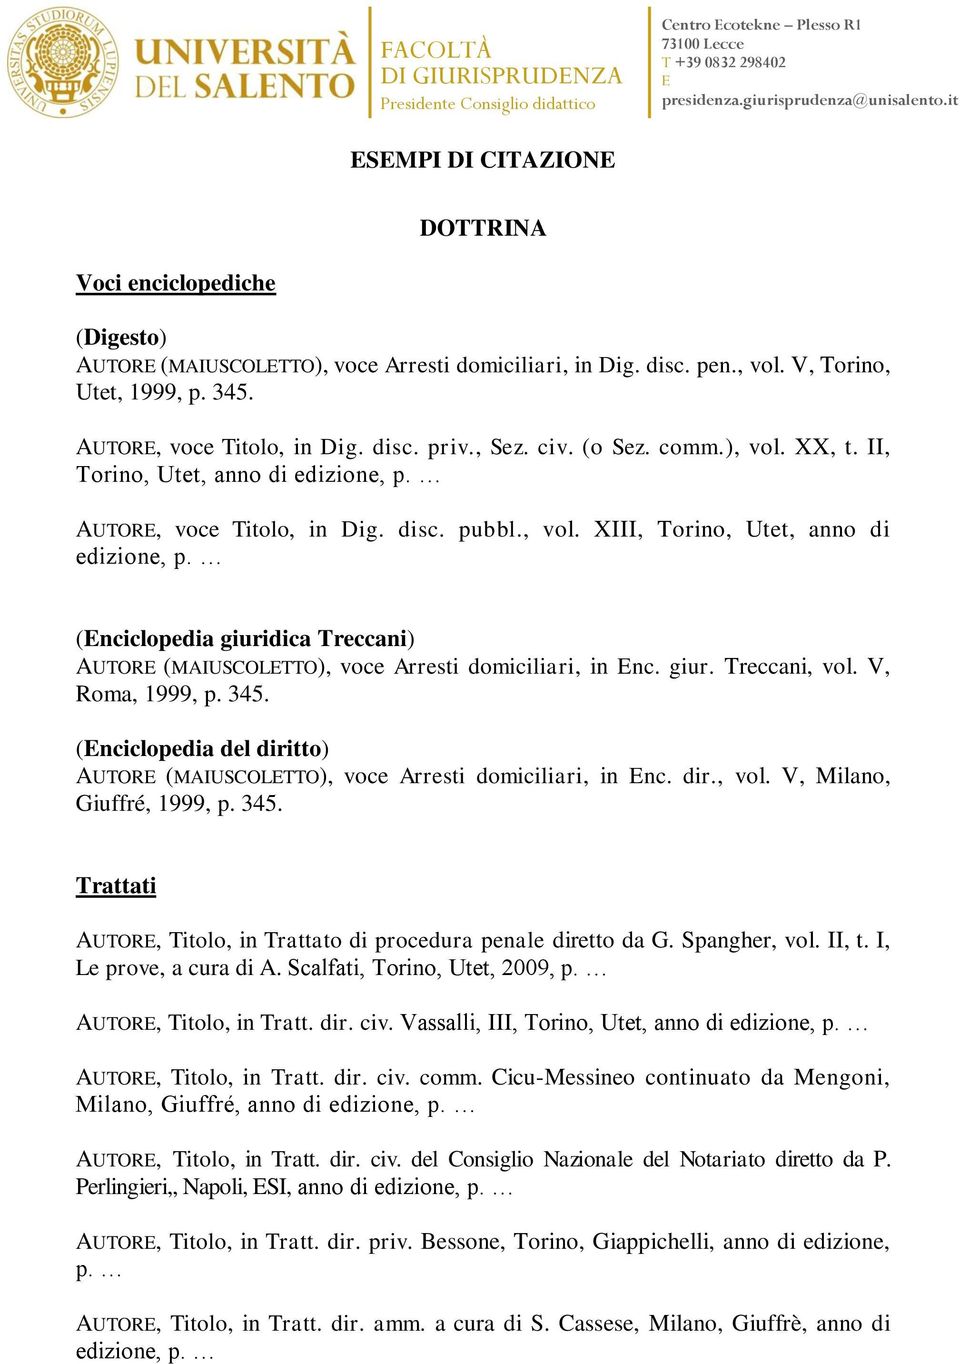 (nciclopedia giuridica Treccani) AUTOR (MAIUSCOLTTO), voce Arresti domiciliari, in nc. giur. Treccani, vol. V, Roma, 1999, p. 345.